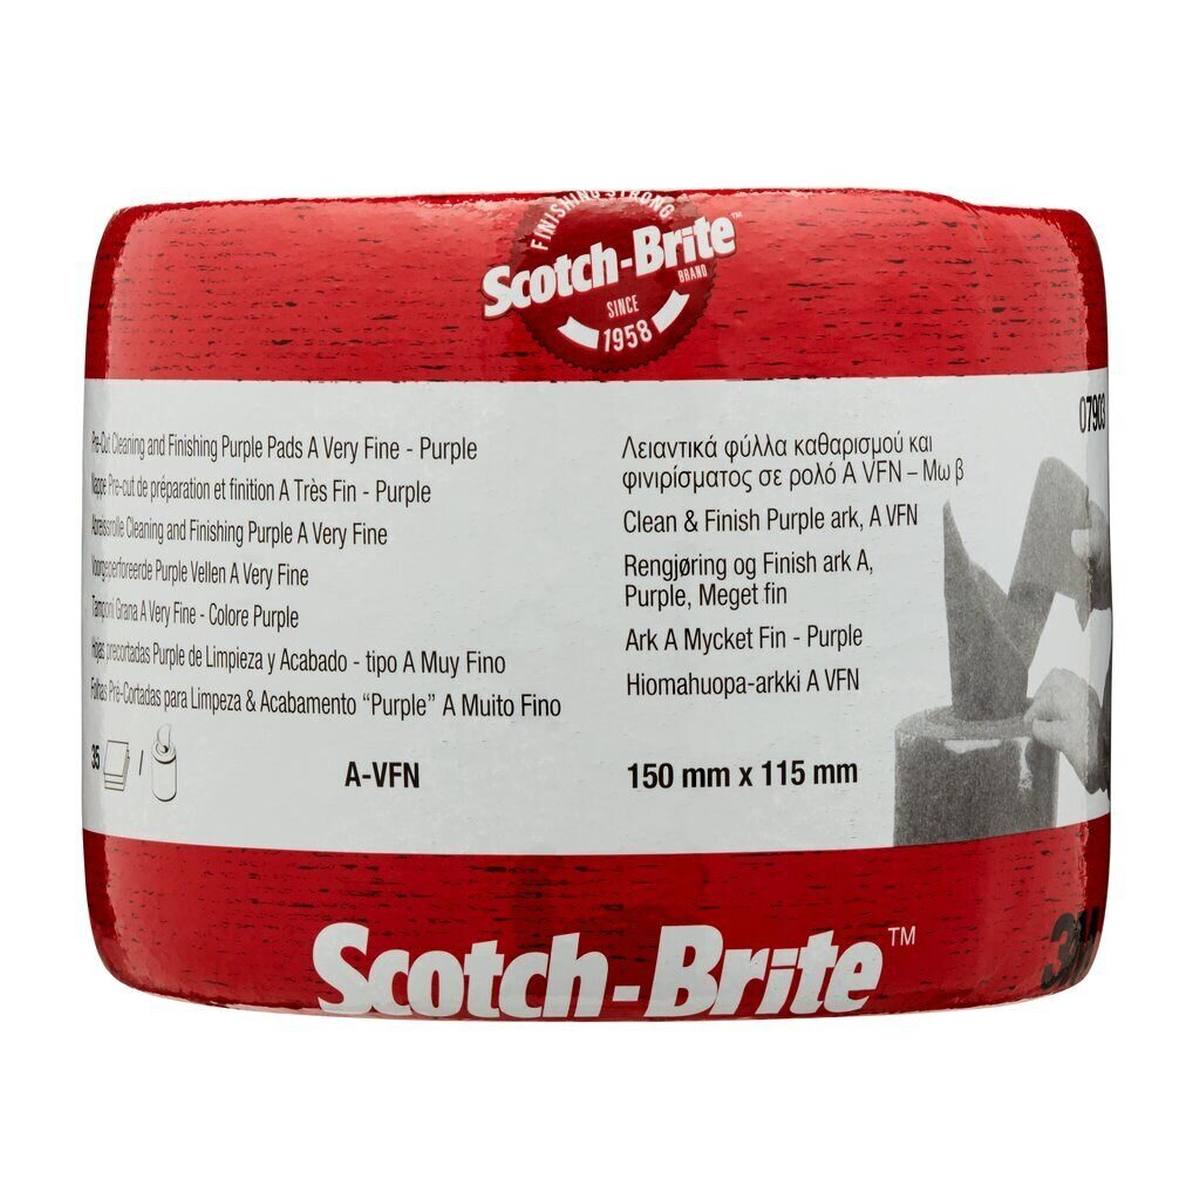 3M Scotch-Brite rotolo in pile CF-SR, viola, 150 mm x 115 mm, A, molto fine, 35 pieghe perforate #07903